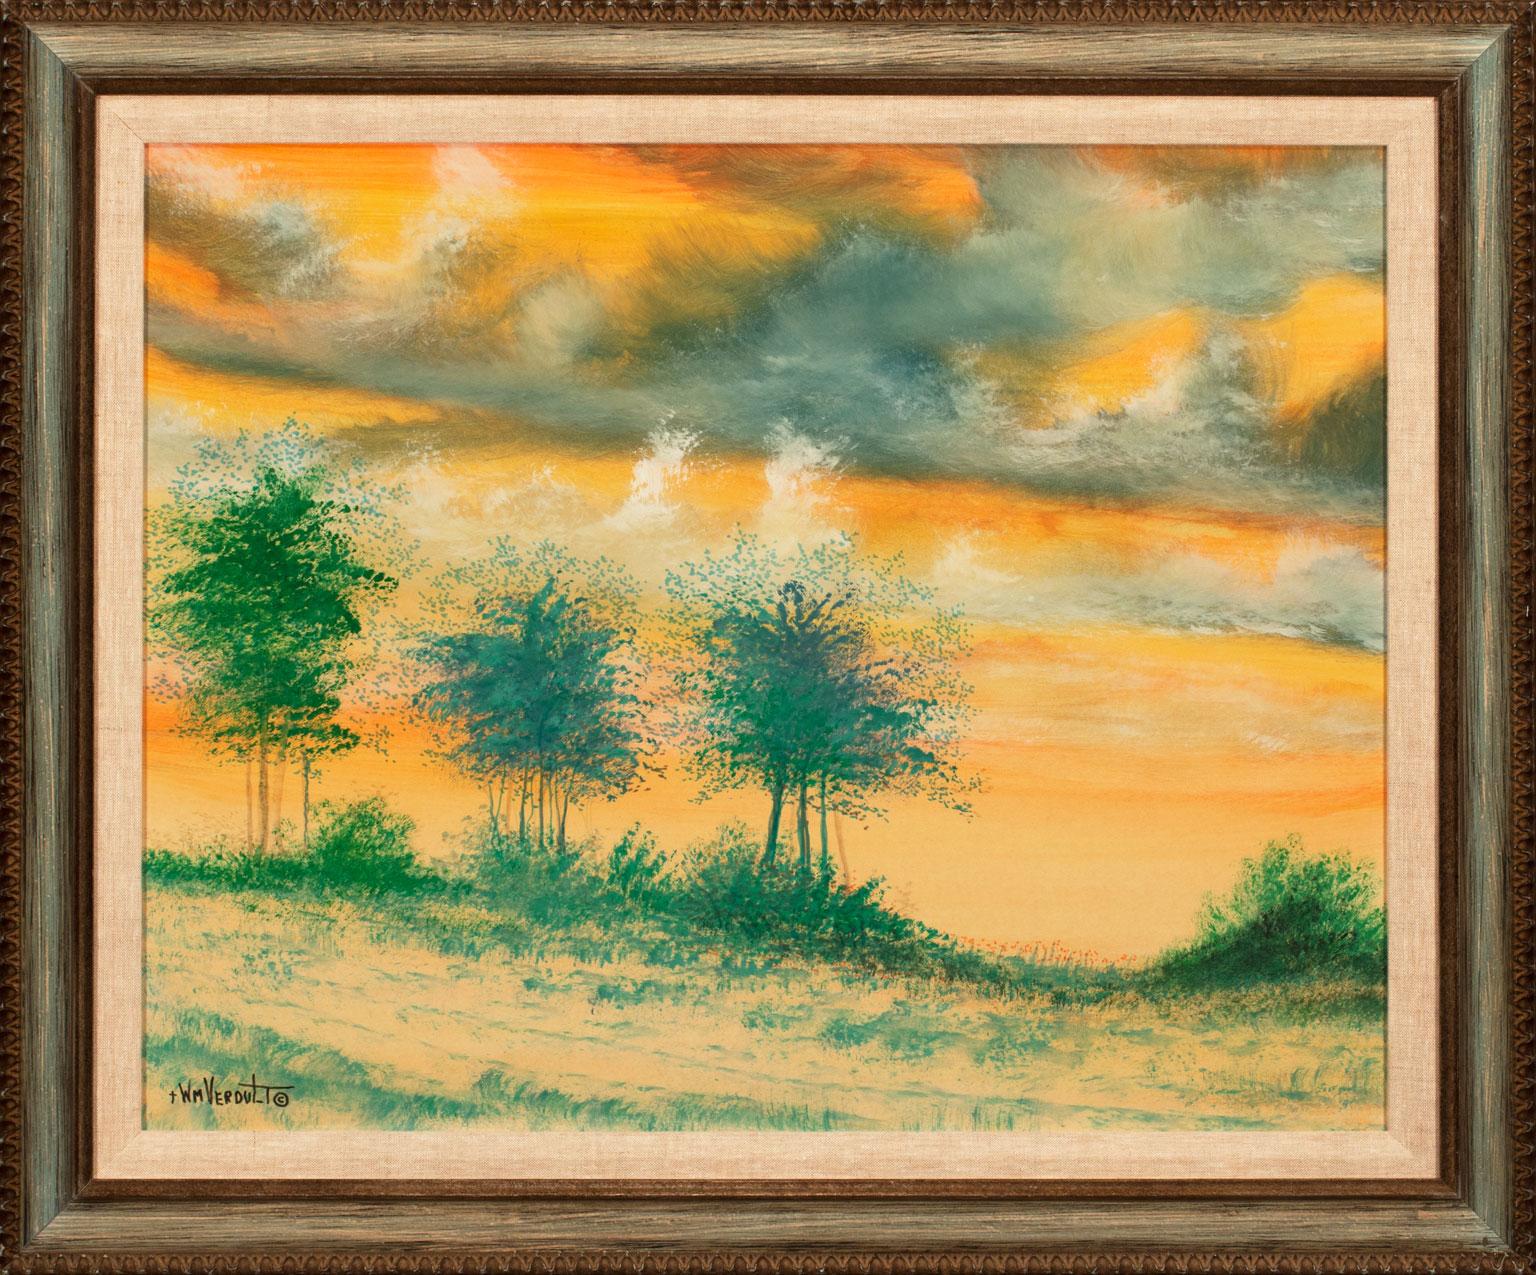 "Meadow", ein Originalaquarell auf Papier von William Verdult, ist ein Werk für den echten Sammler. Das Genie des Künstlers spiegelt einen feurigen künstlerischen Ansatz wider, der beim Betrachter unerforschte Gefühle weckt. Verdults Stil und